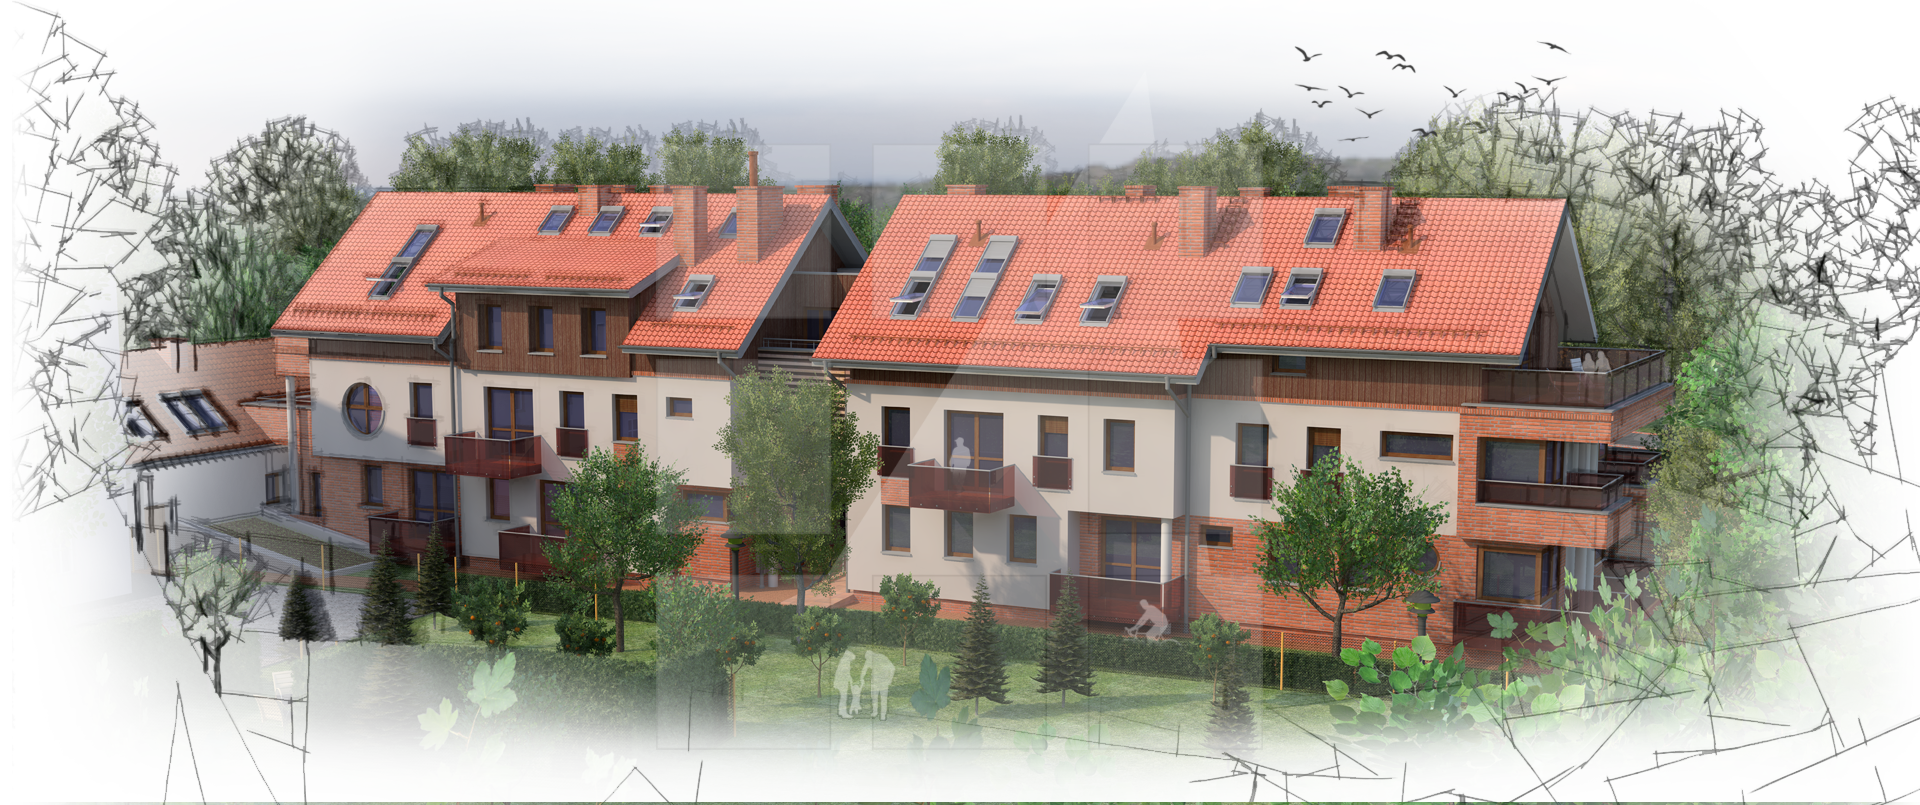 Wizualizacja nowego projektu Biura Projektowego - Furmanek Aleksander -
			 budynku mieszkalnego wielorodzinnego zlokalizowanego w Toruniu przy ul. Poznańskiej